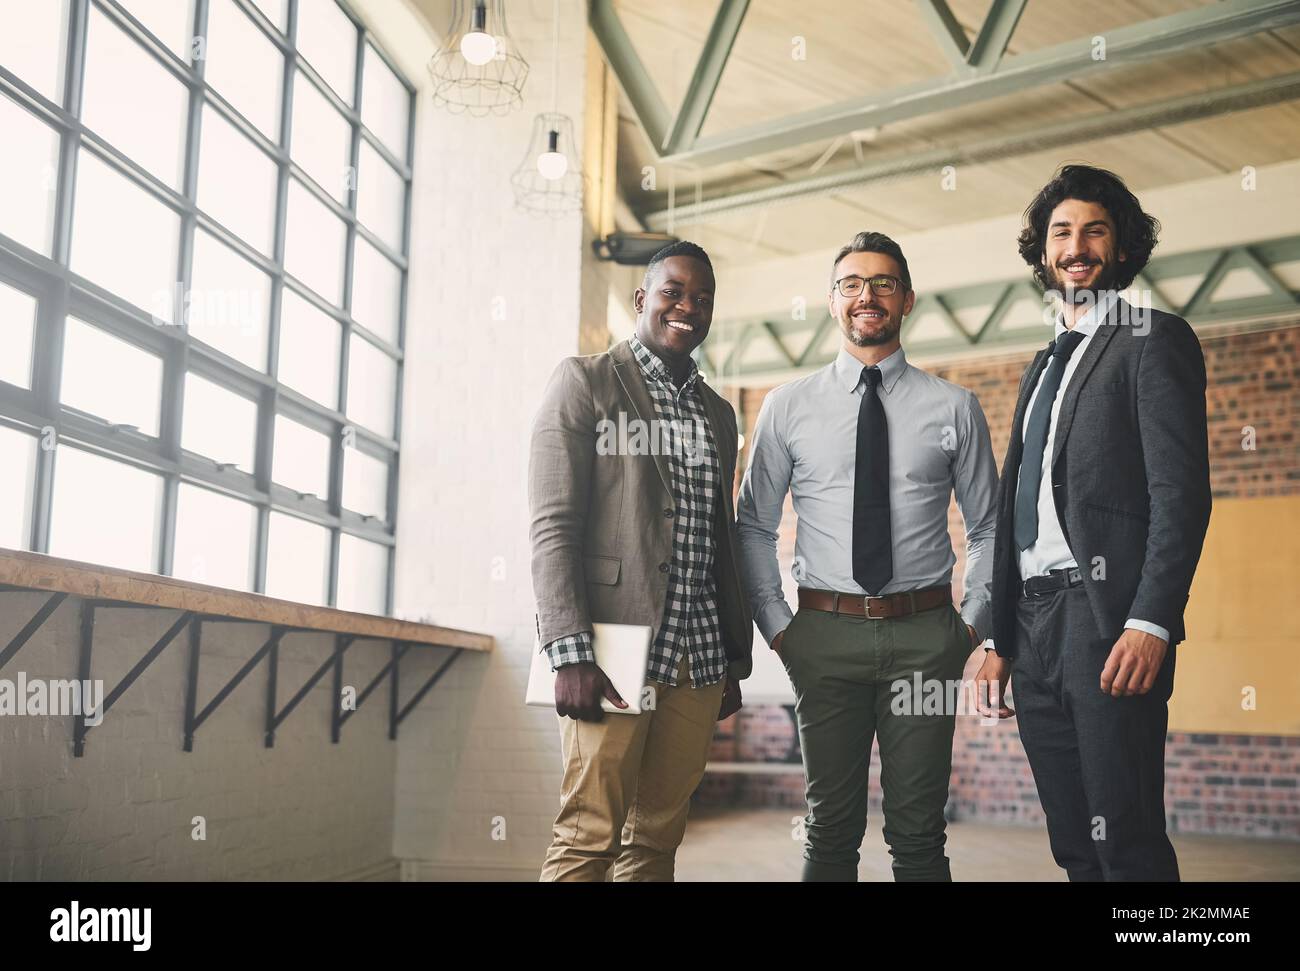 Die Geschäftswelt im Sturm erobert haben. Porträt von drei professionellen Geschäftsleuten, die in ihrem Büro posieren. Stockfoto